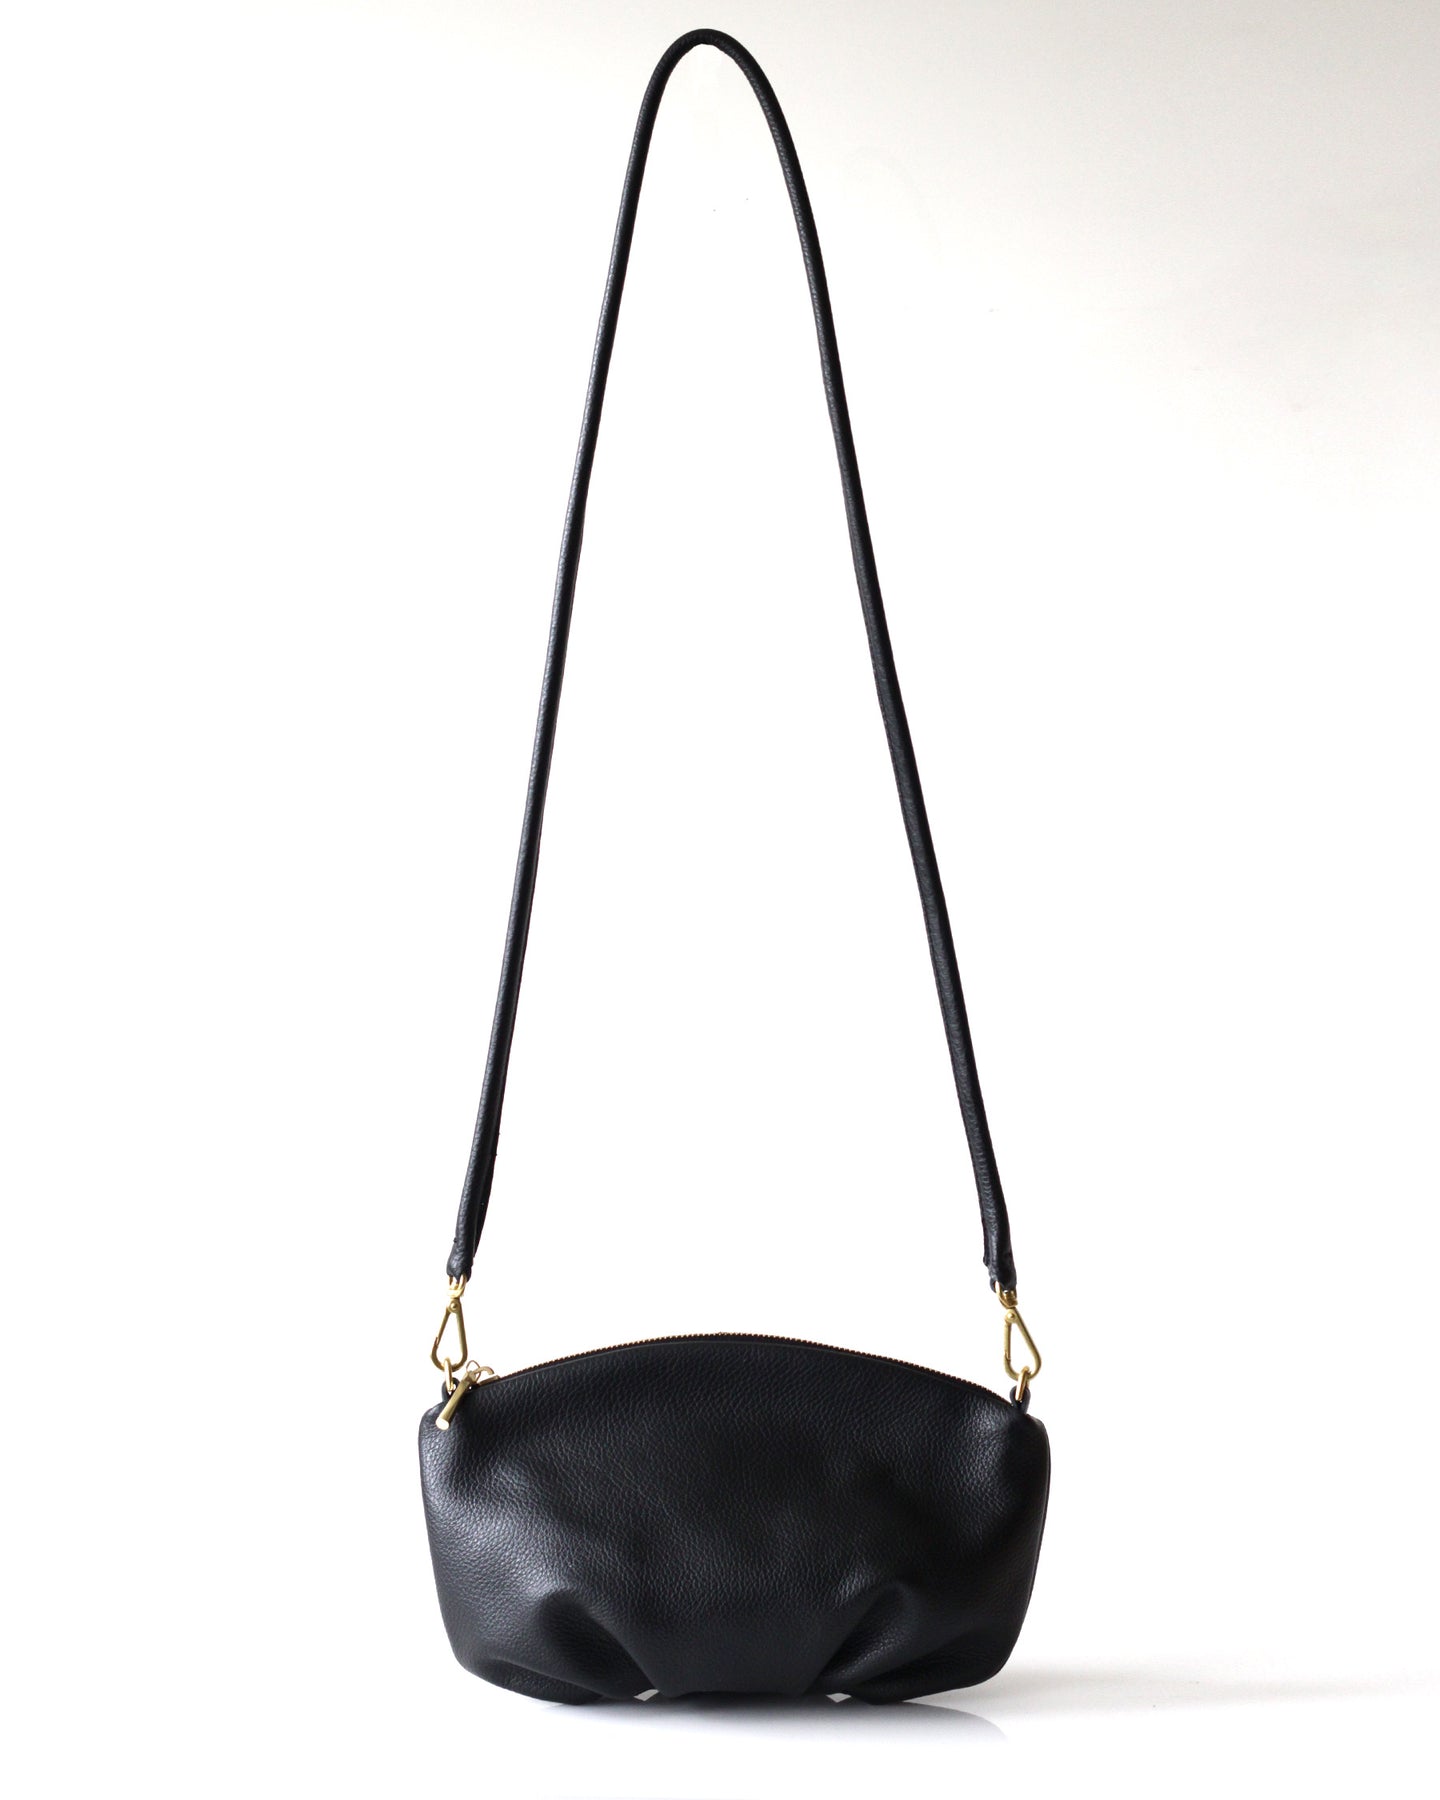 Black Leather bag OPELLE Lotus Weekender NEW by opellecreative, $378.00